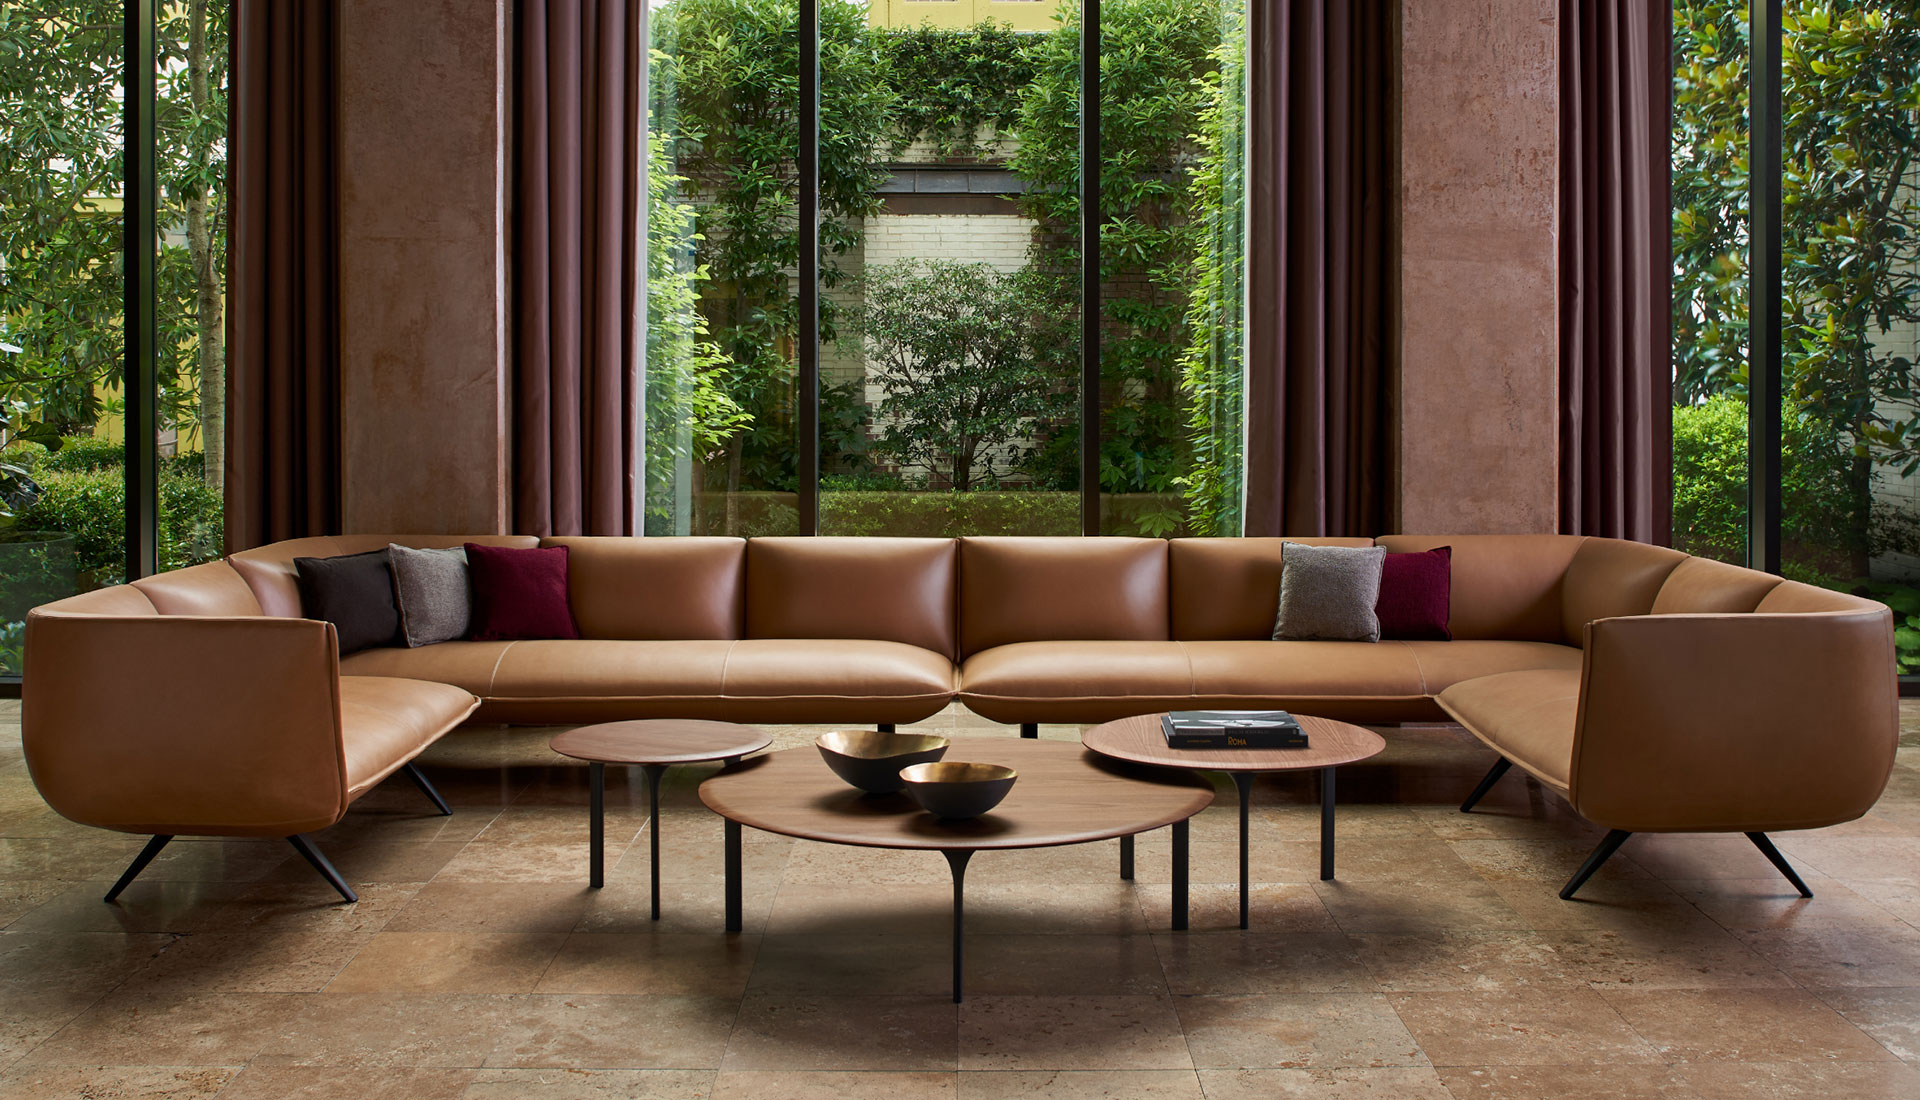 Лука Никетто для Bernhardt Design: универсальная мебель